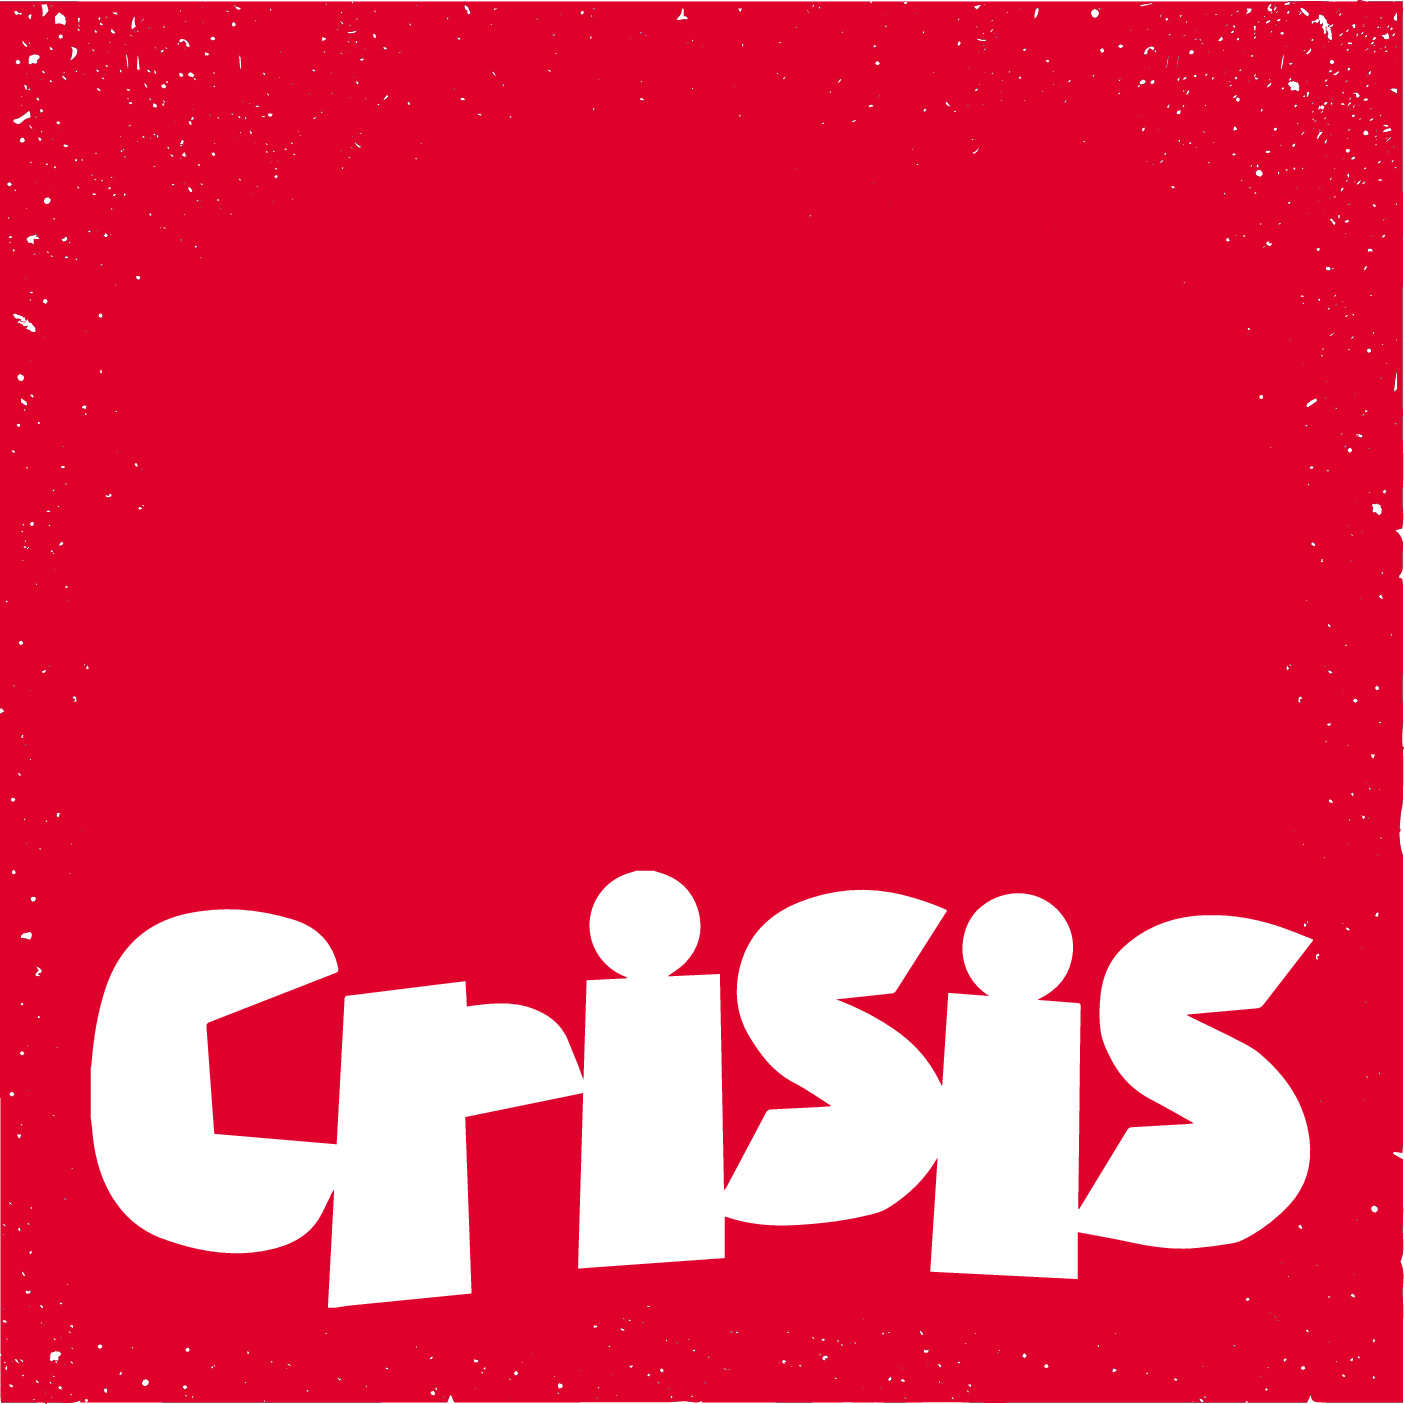 Supporting Crisis At Christmas